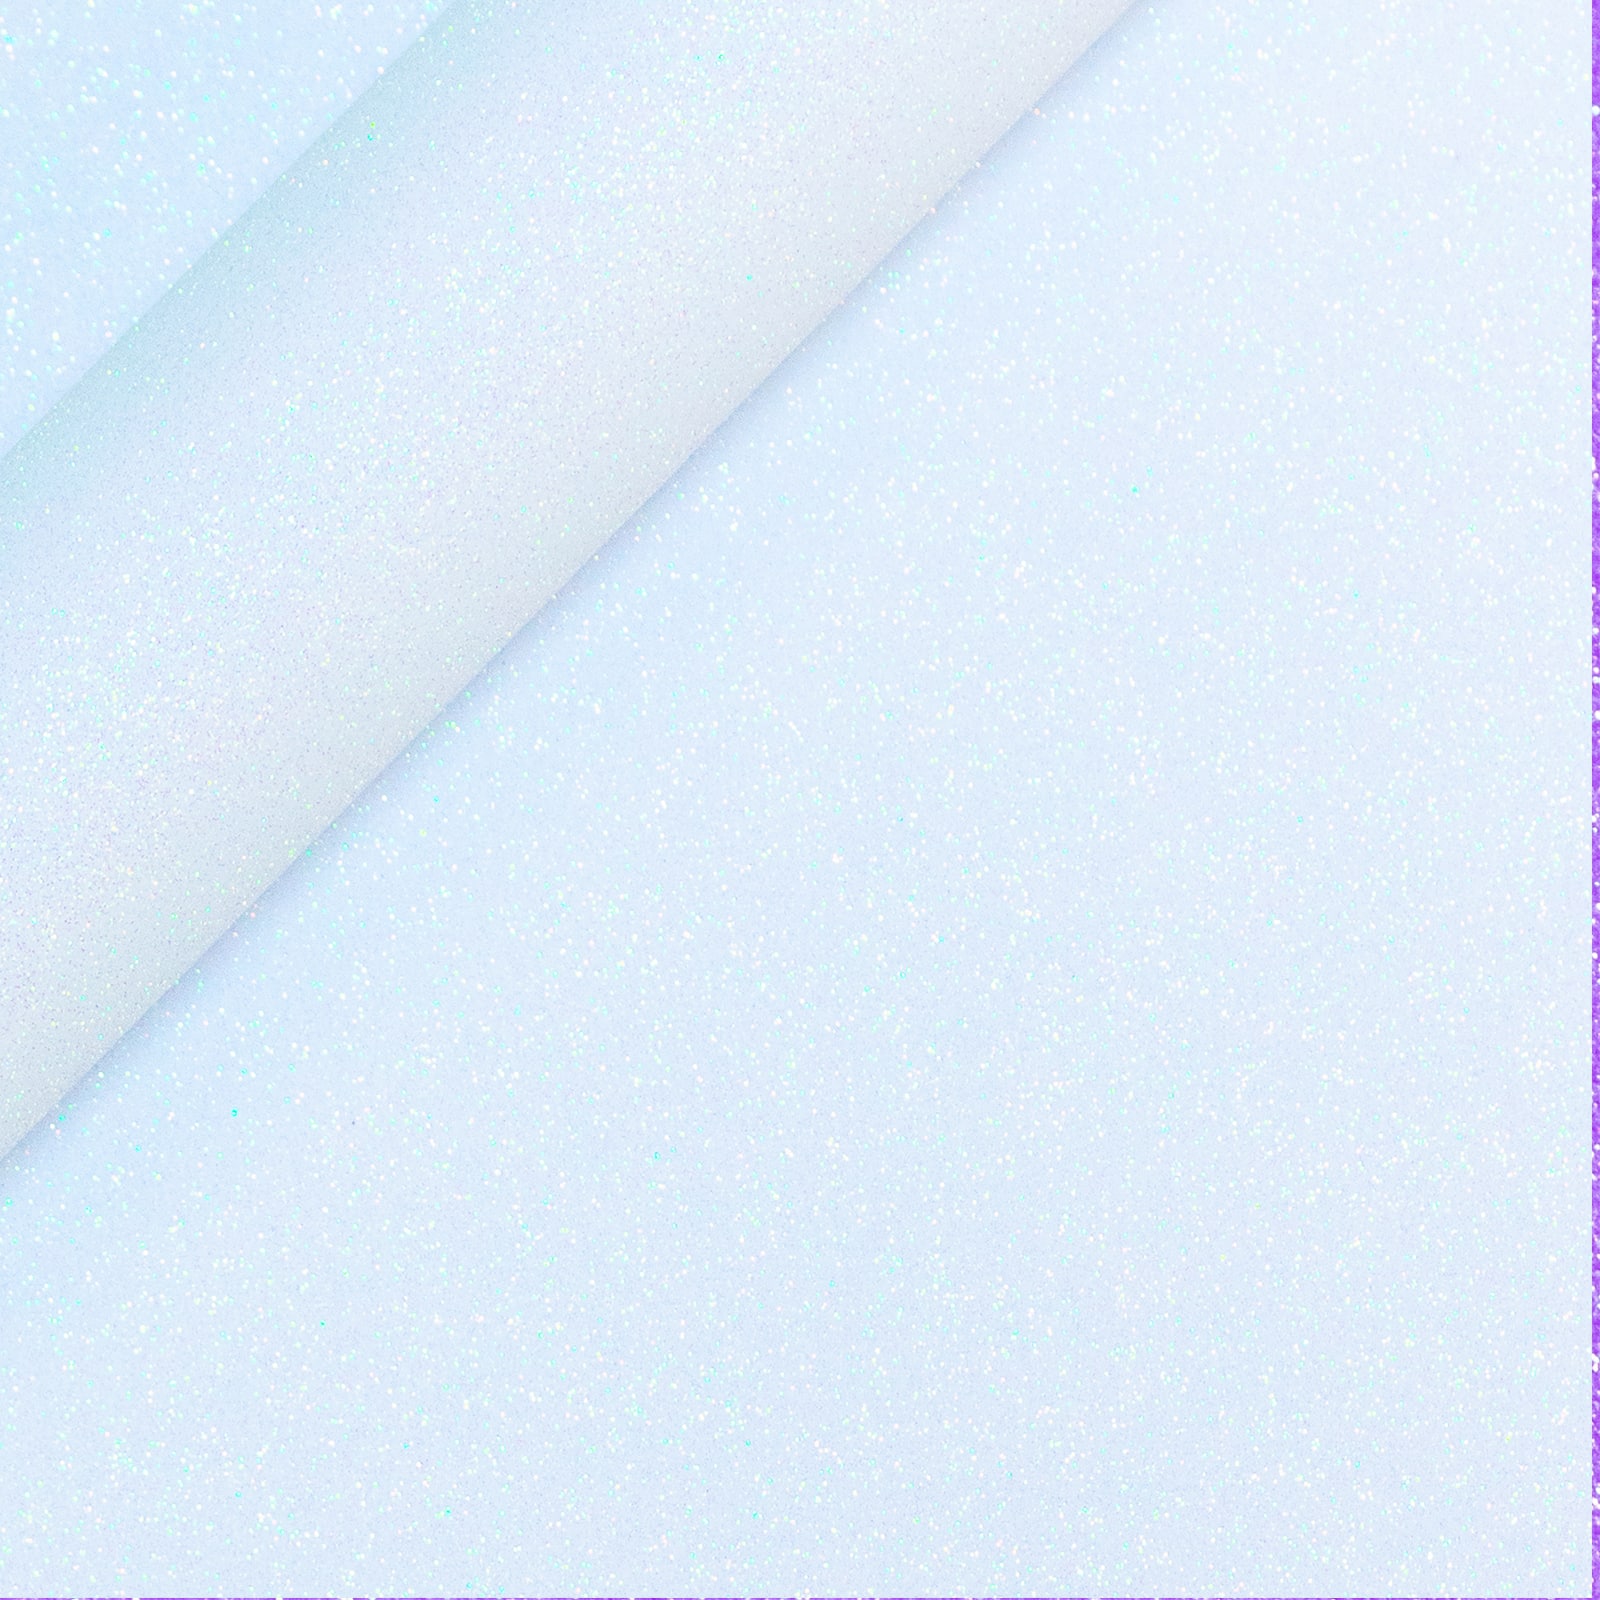 Siser&#xAE; Glitter Heat Transfer Vinyl, 36&#x22;